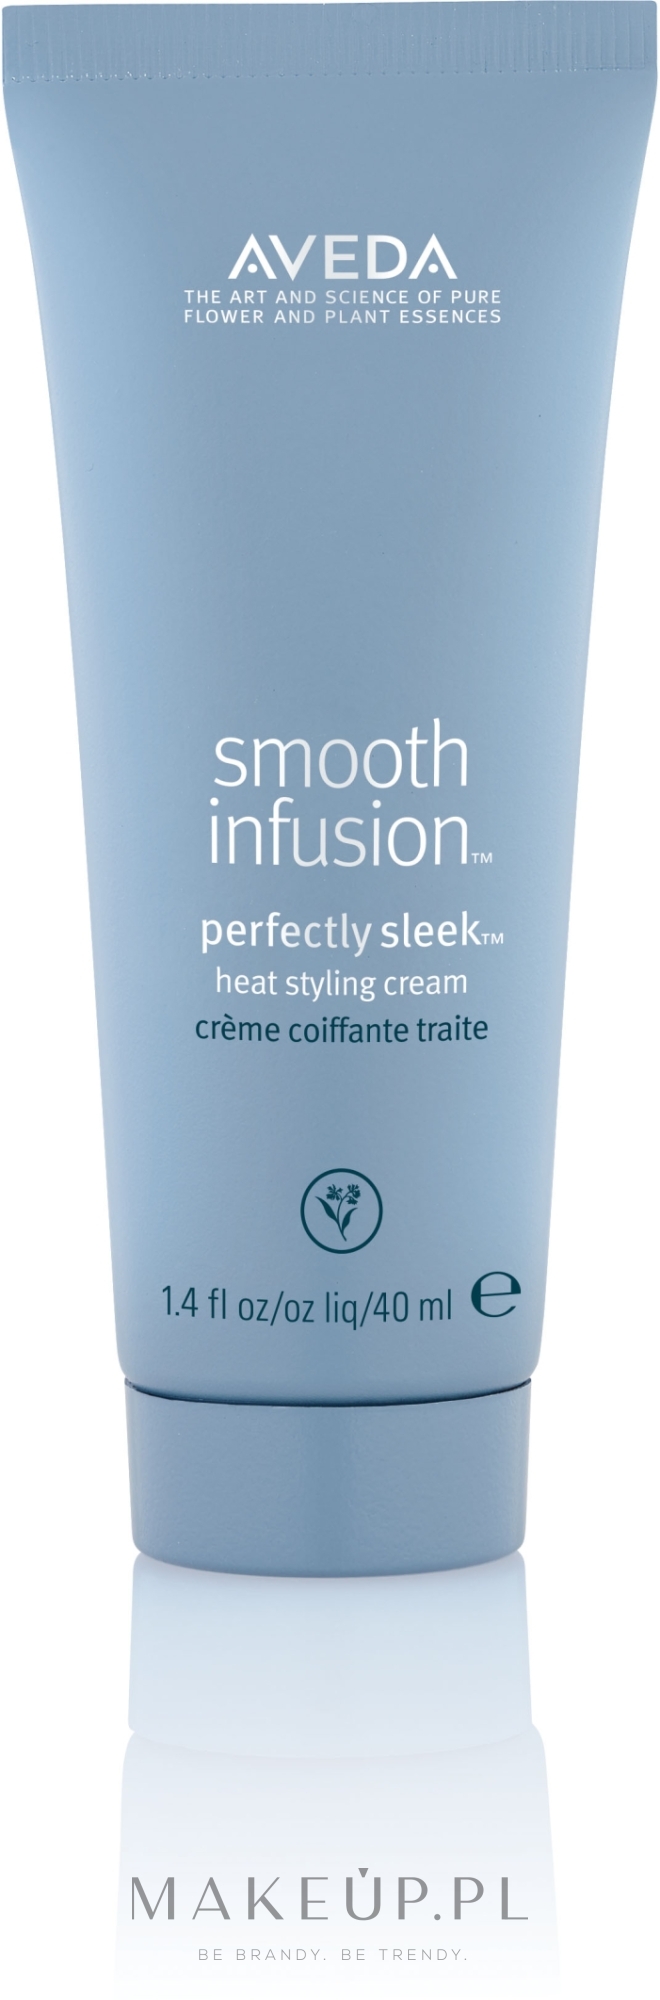 Krem-odżywka do stylizacji na gorąco - Aveda Smooth Infusion Perfectly Sleek Styling Cream (mini) — Zdjęcie 40 ml